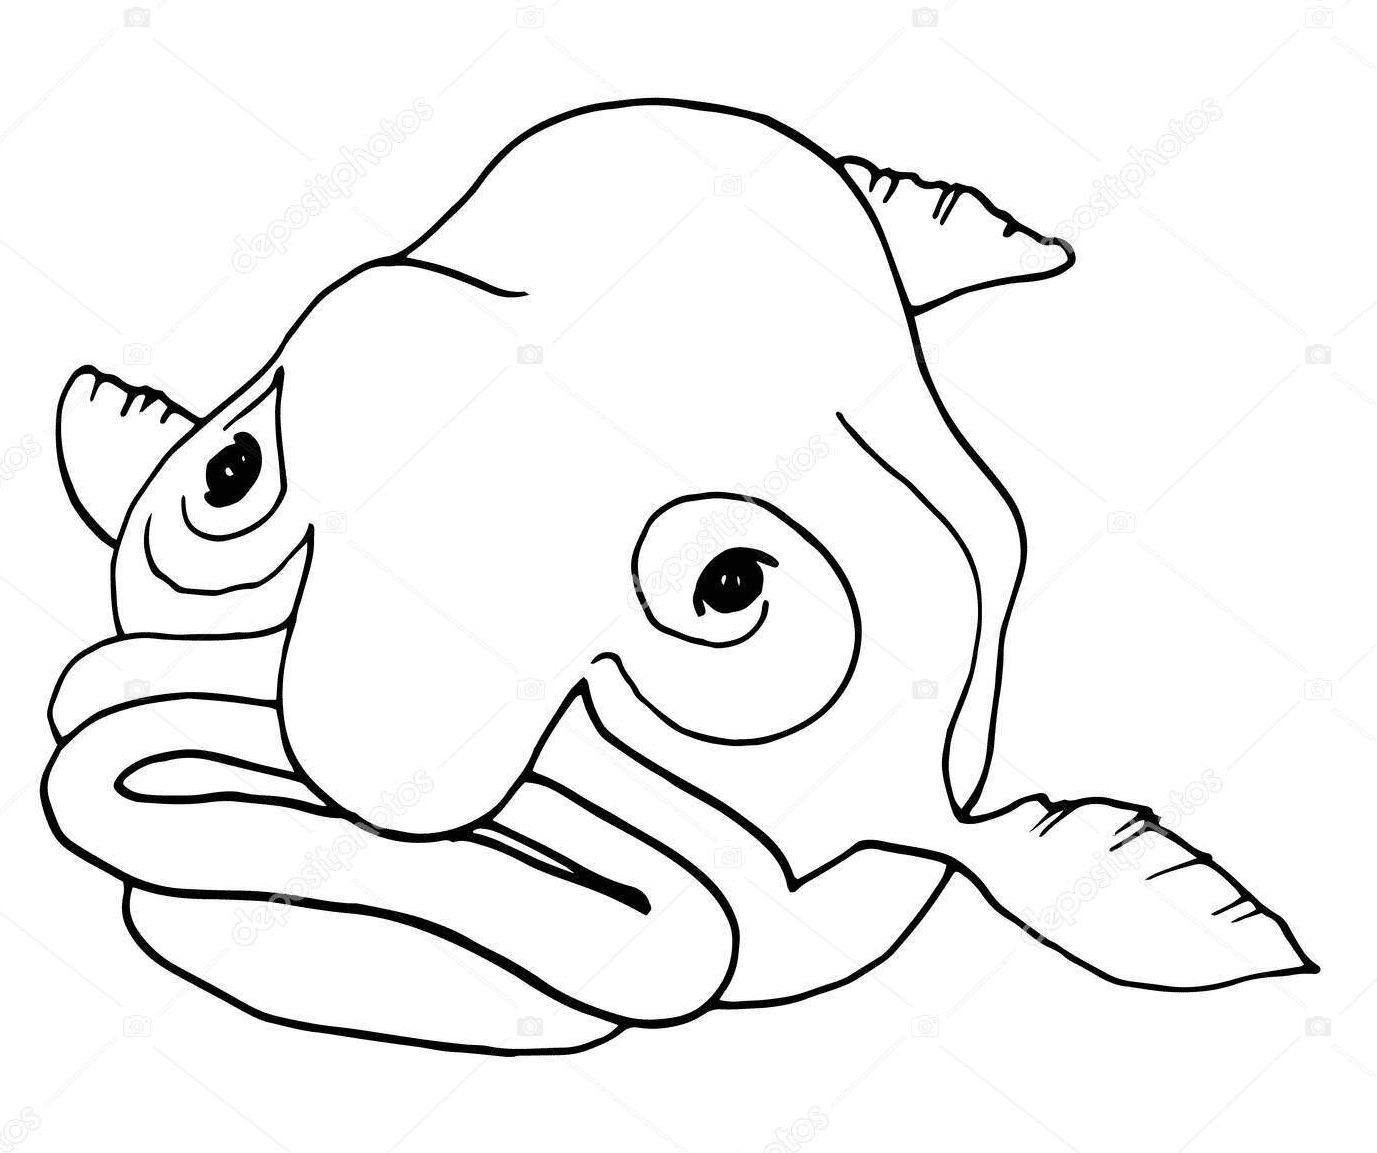 Un Blobfish de Blobfish